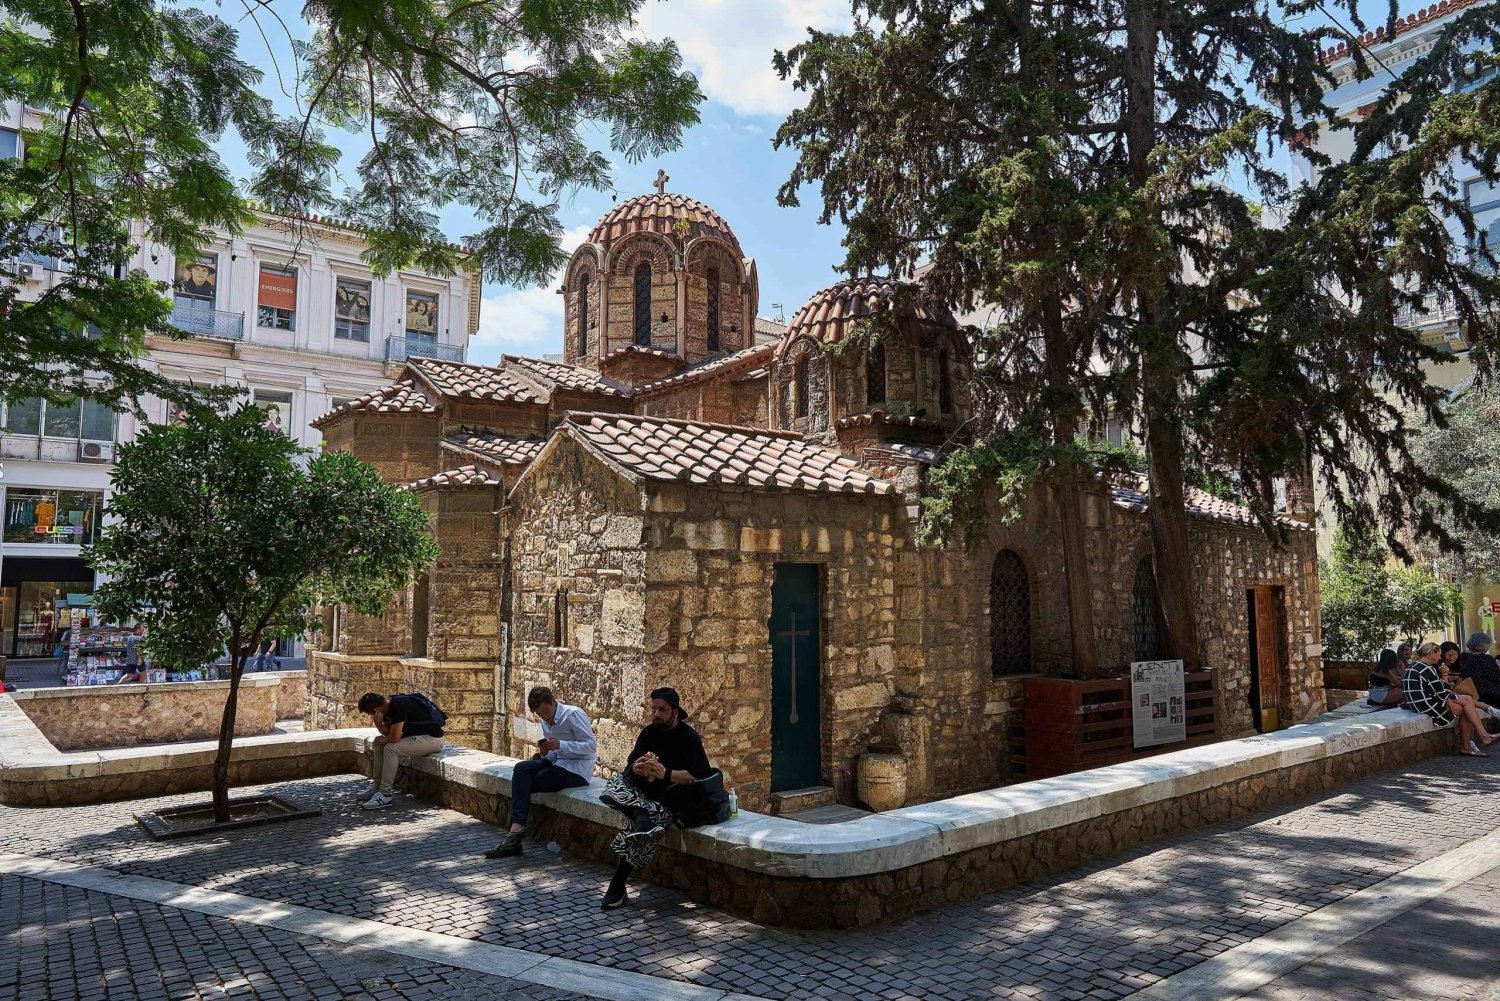 Athènes : Visite guidée audioguide exclusive dans les joyaux byzantins